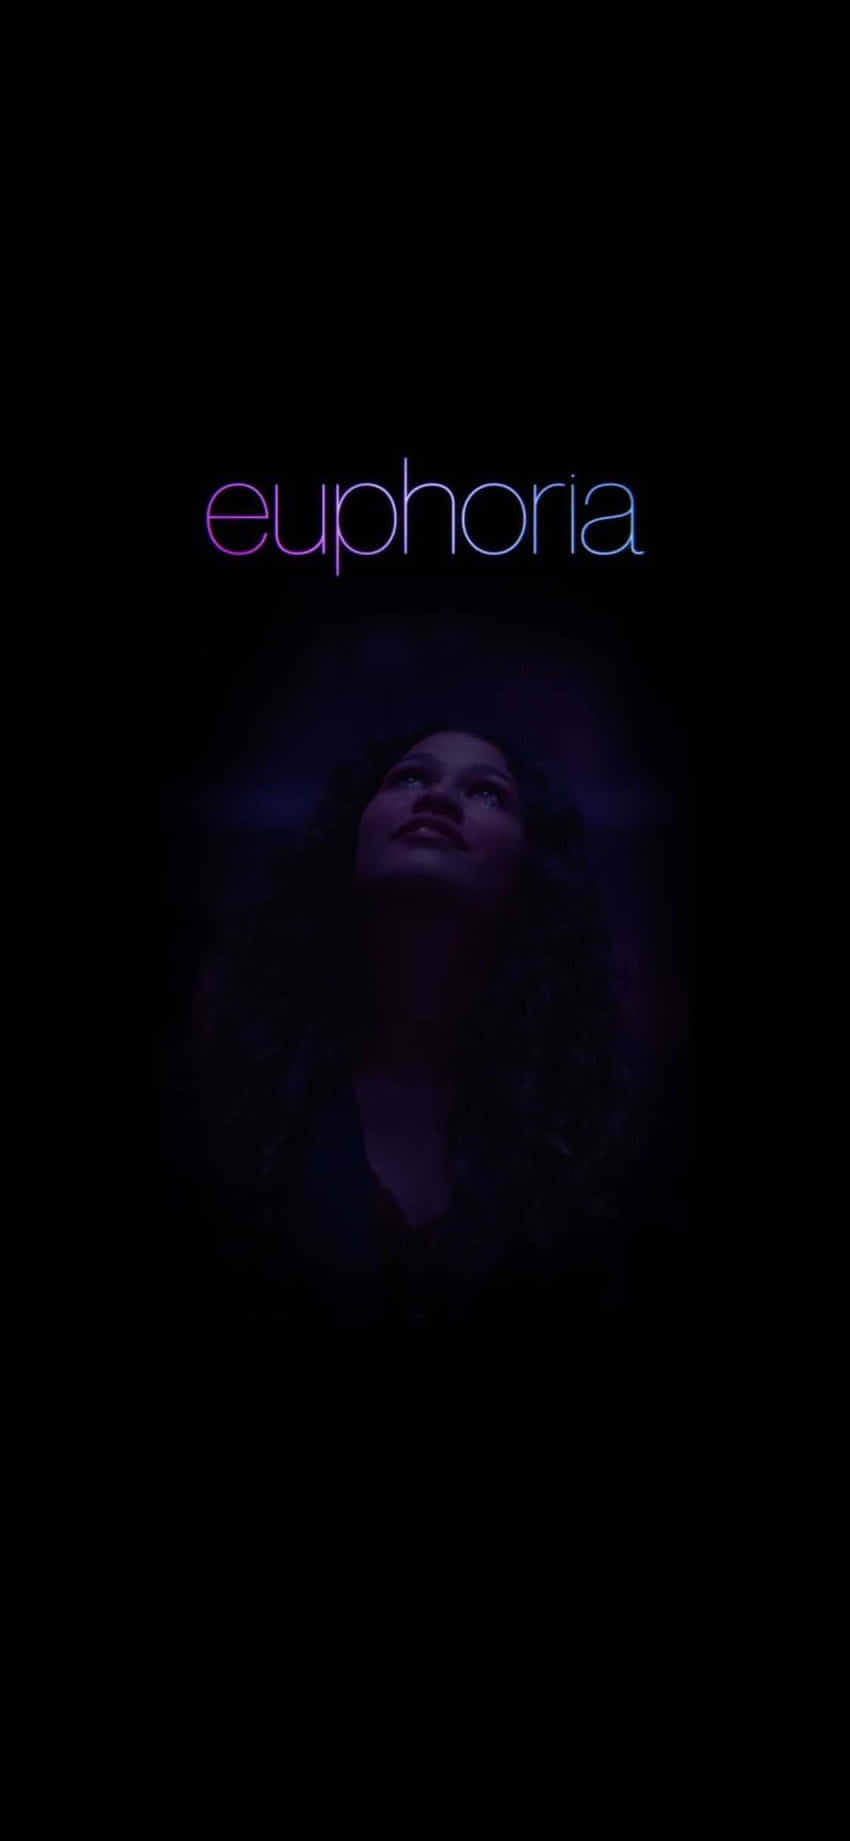 Zeigensie Ihre Einzigartigkeit Mit Euphoria Hbo Auf Dem Iphone. Wallpaper